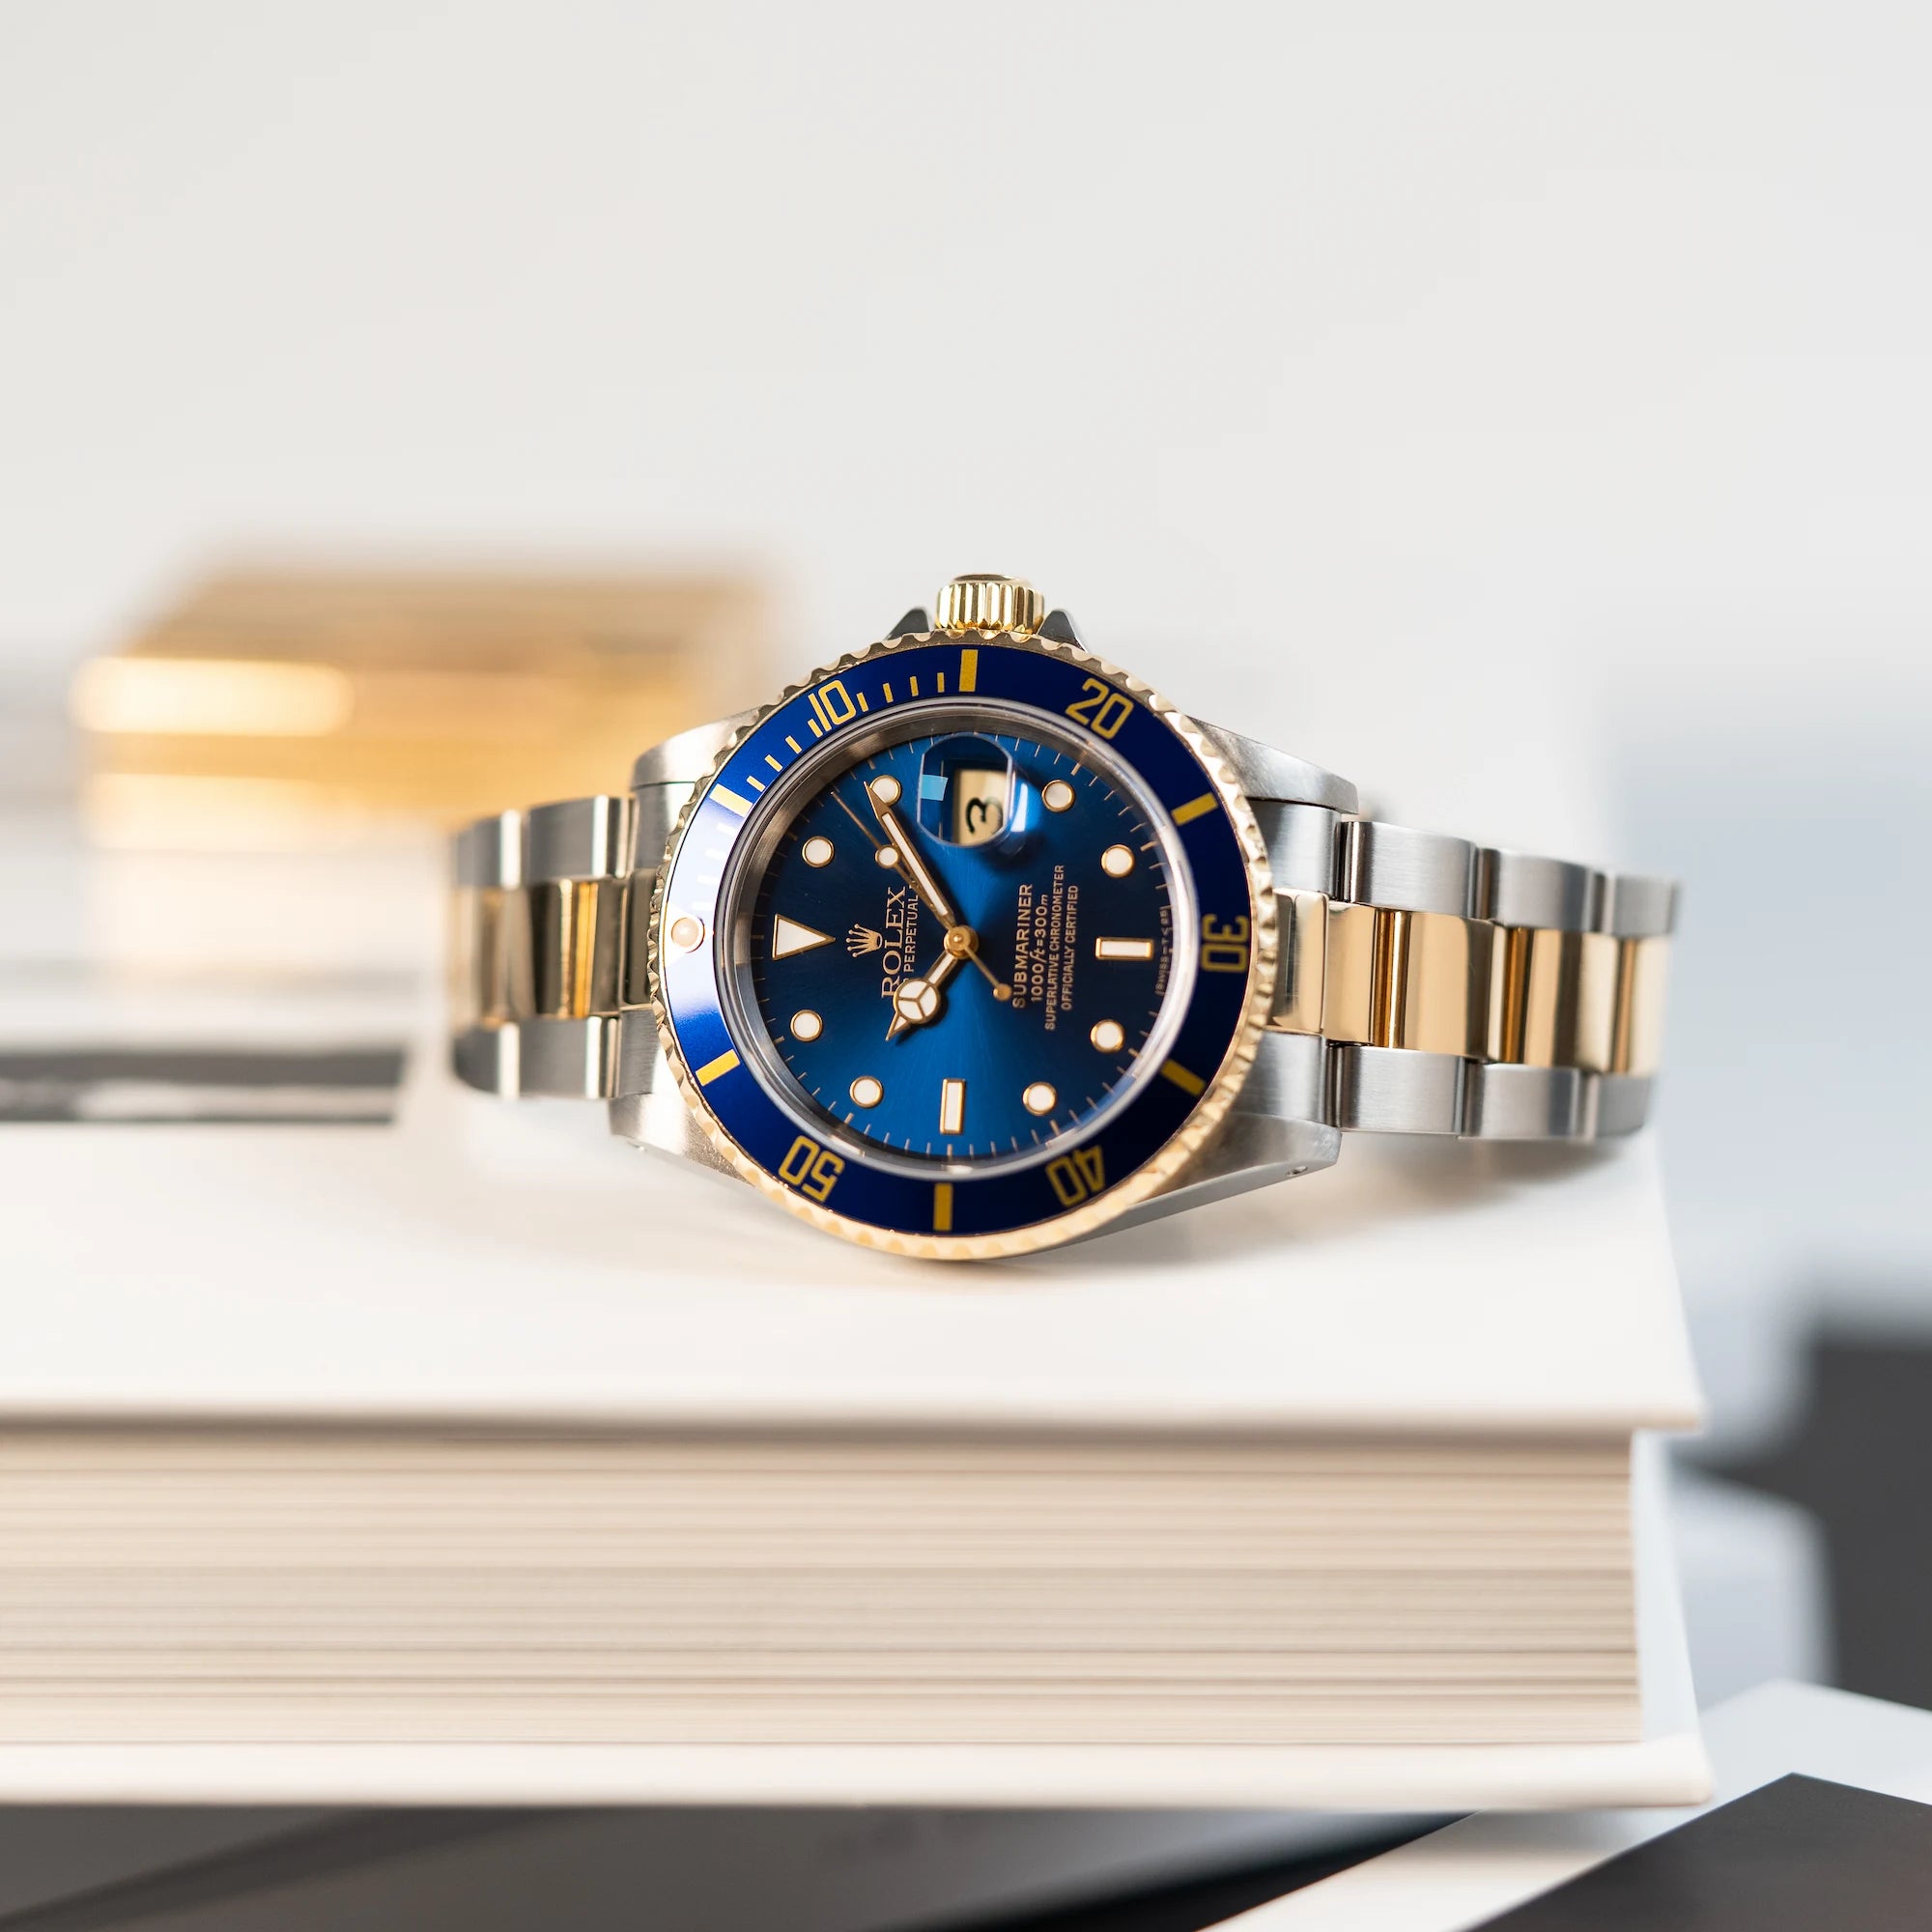 Produktfotografie der mit blauem Zifferblatt und Lünette, während die Uhr auf einem Buch liegt